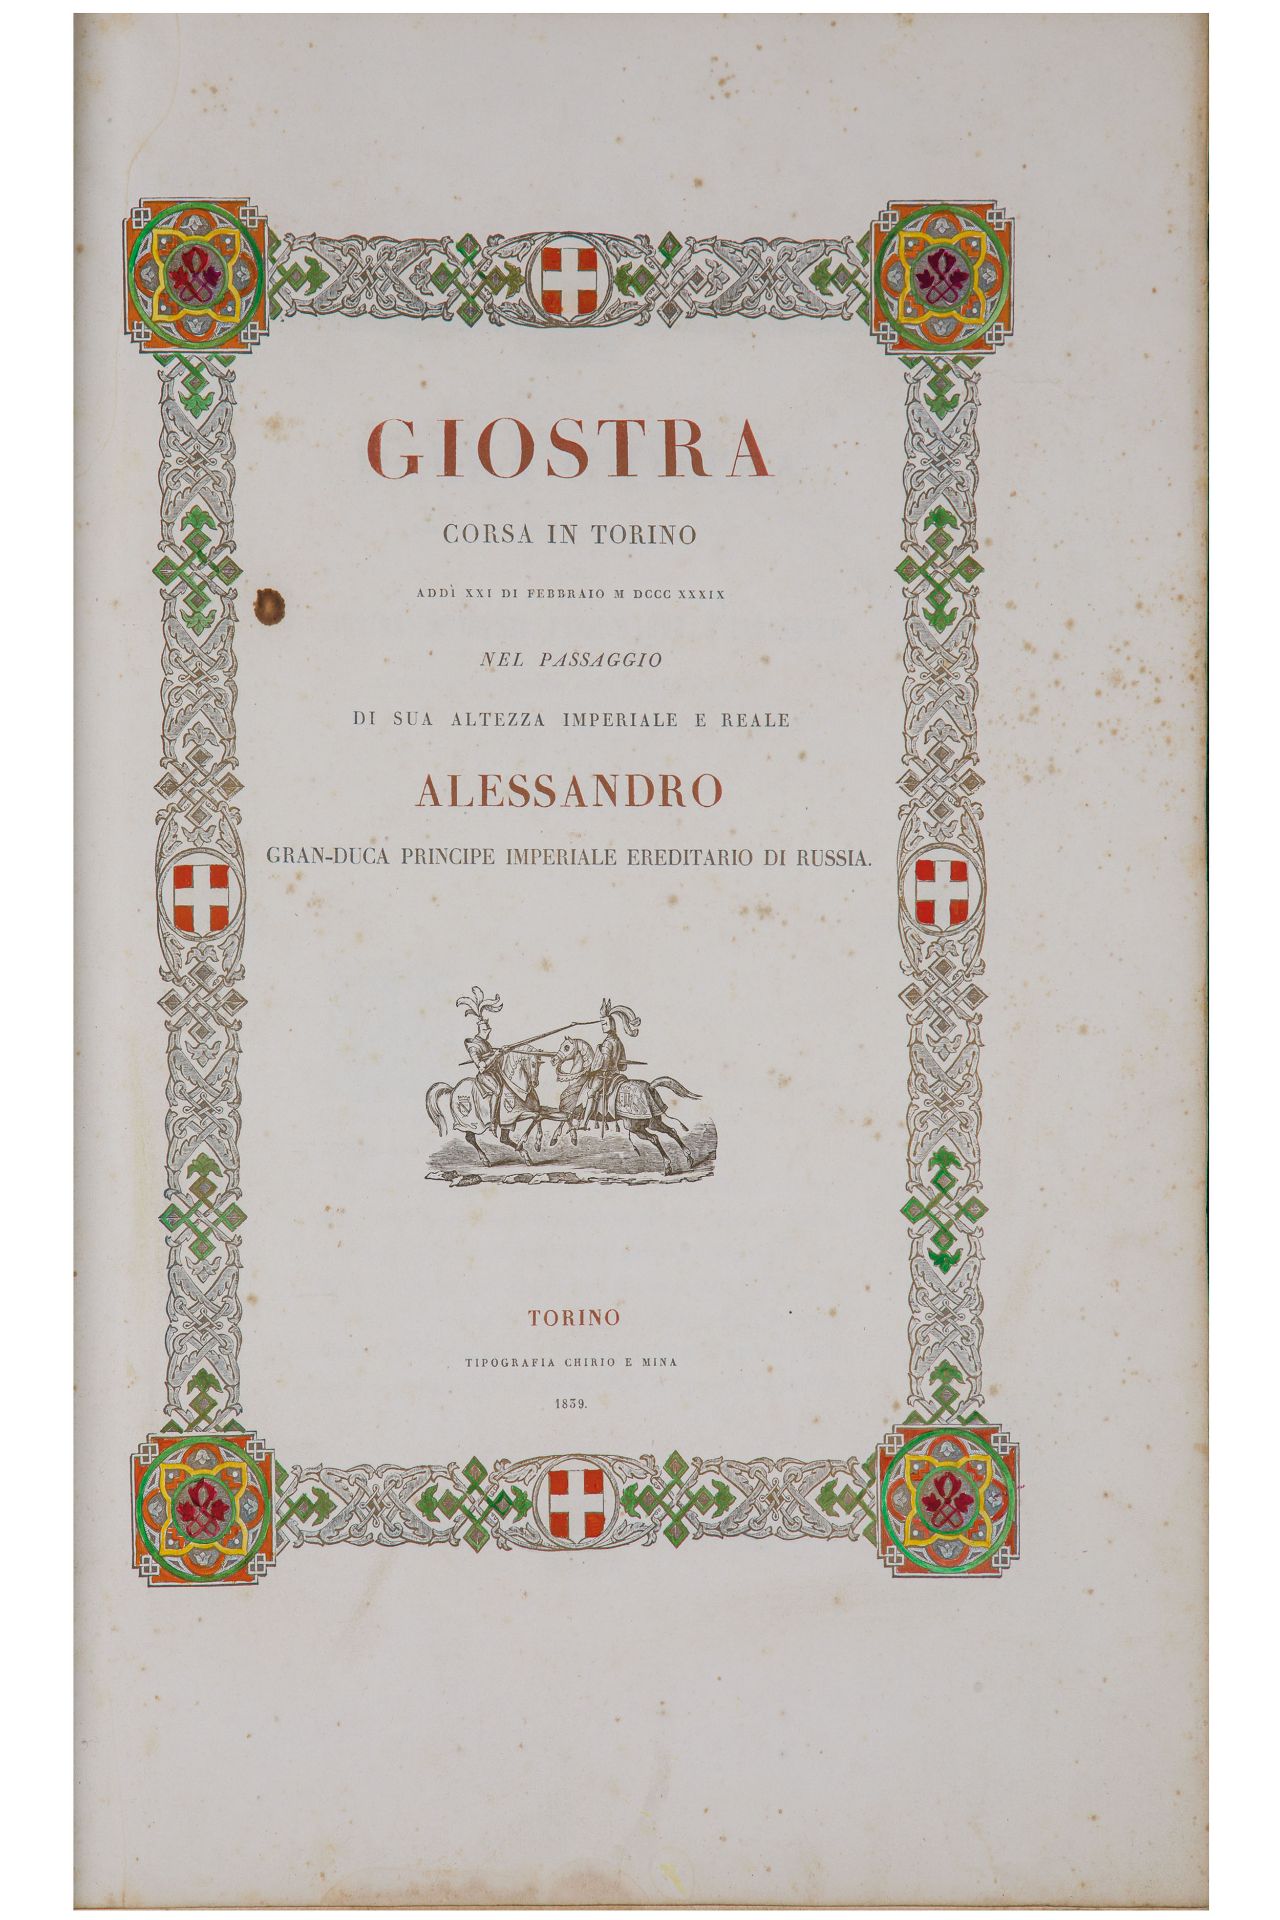 [BINDING]. Giostra corsa in Torino add¿ XXI di febbraio 1839 nel passaggio di sua altezza - Image 2 of 5